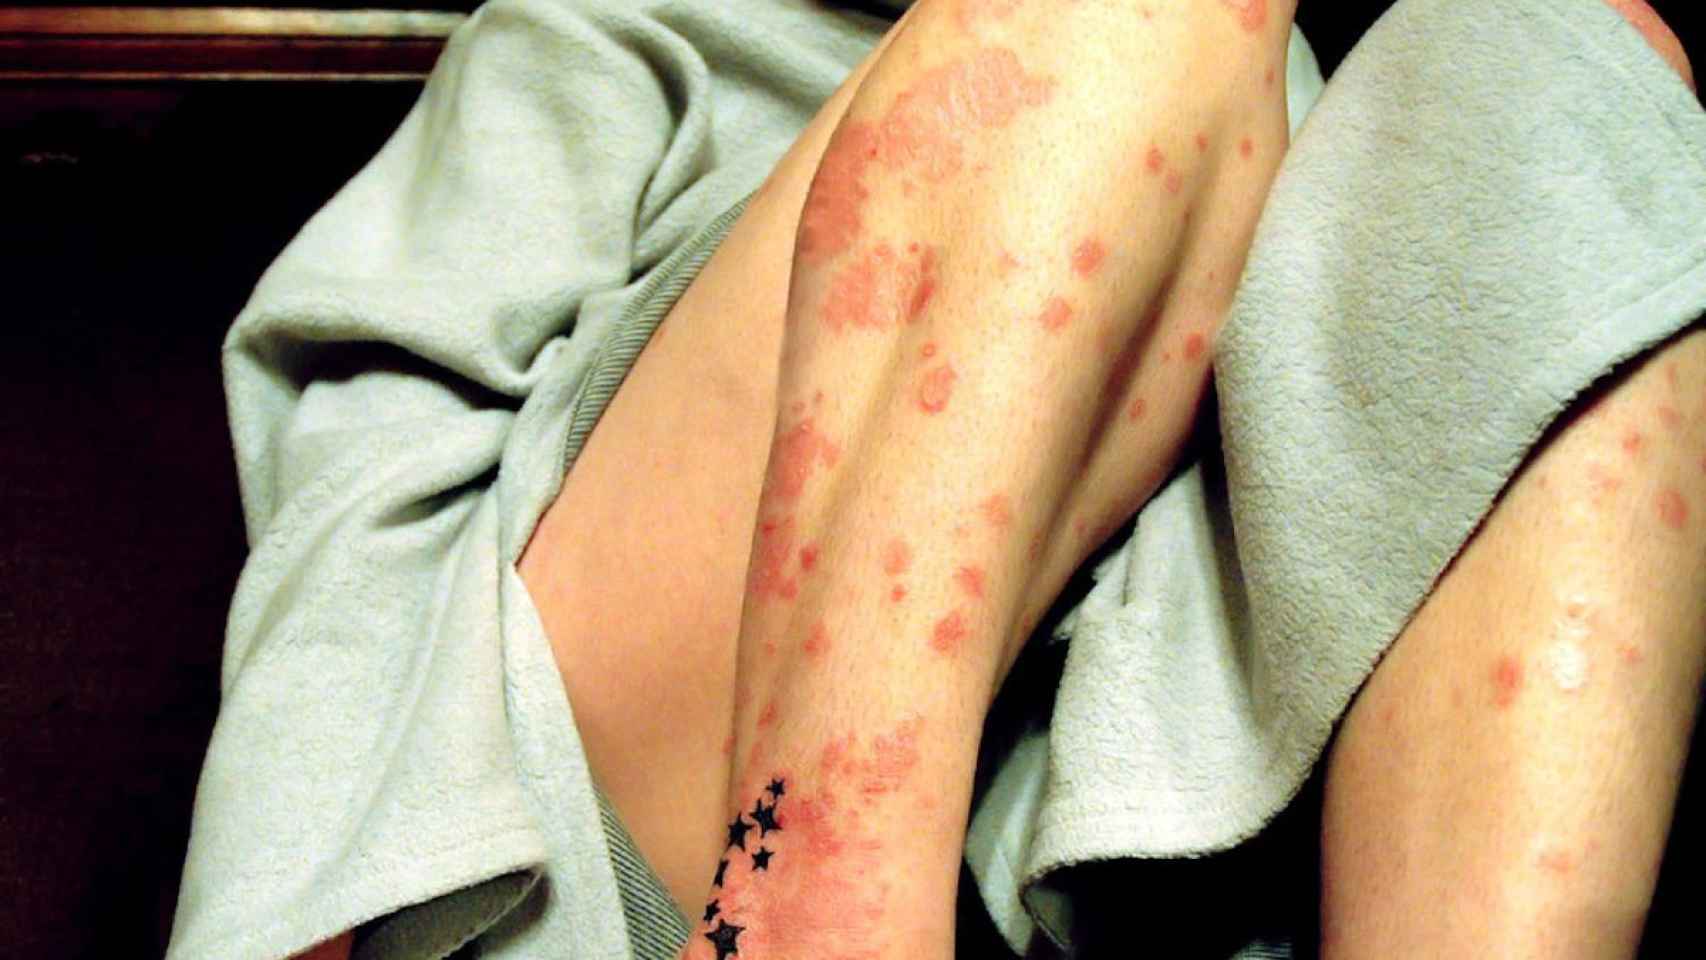 La psoriasis es una enfermedad crónica de la piel cuyos síntomas son muy visibles / FLICKR